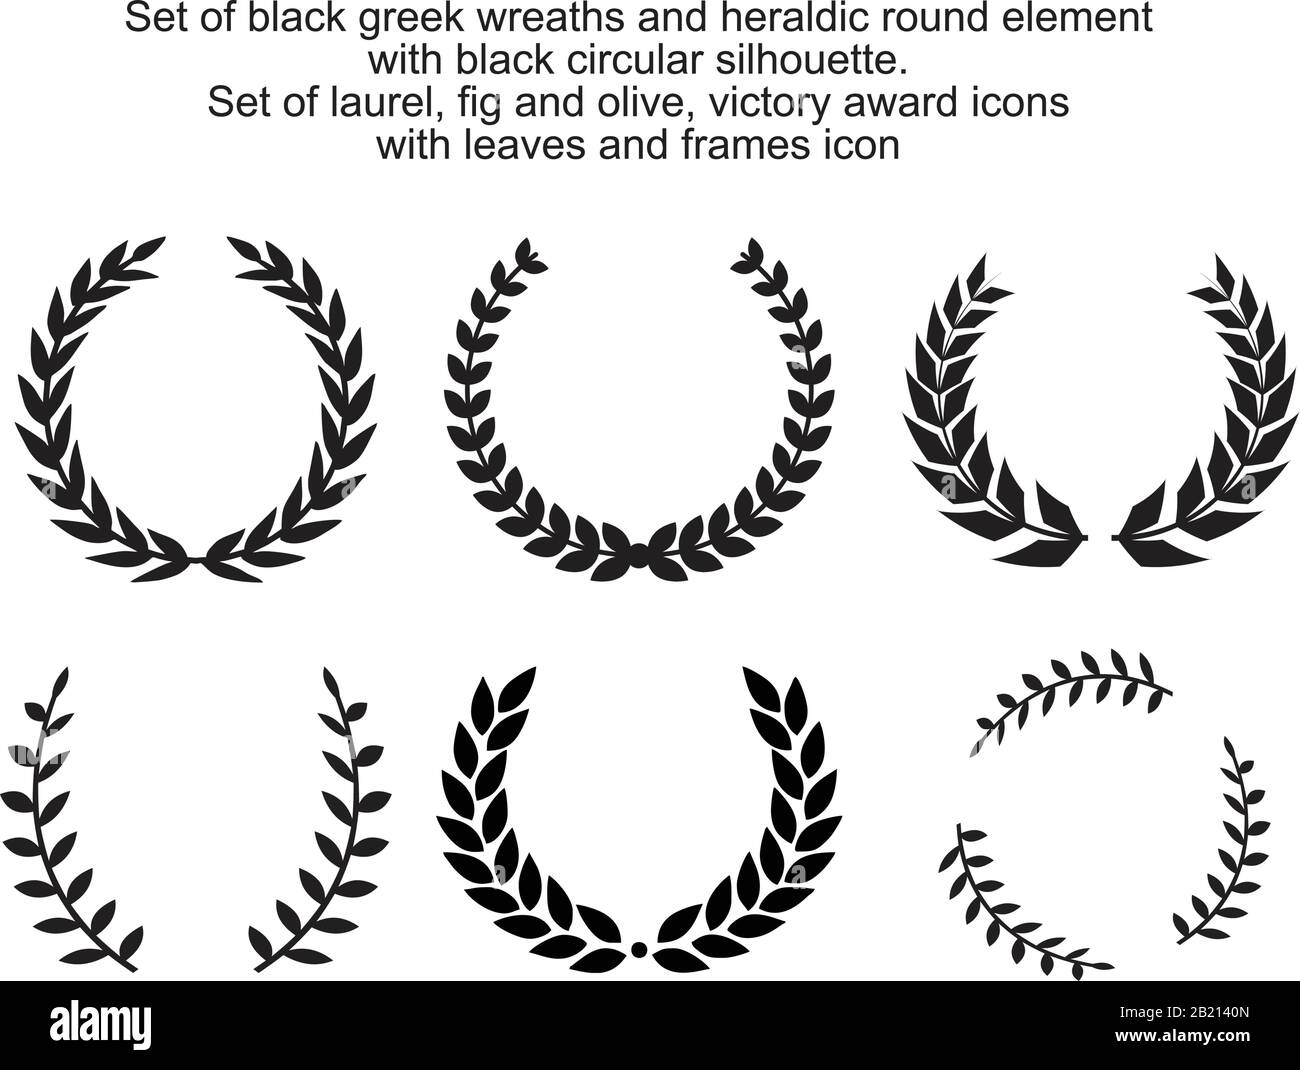 Ensemble de couronnes grecques noires et d'éléments ronds héraldiques avec silhouette circulaire noire. Ensemble de laurier, figue et olive, symboles de victoire avec feuilles an Illustration de Vecteur